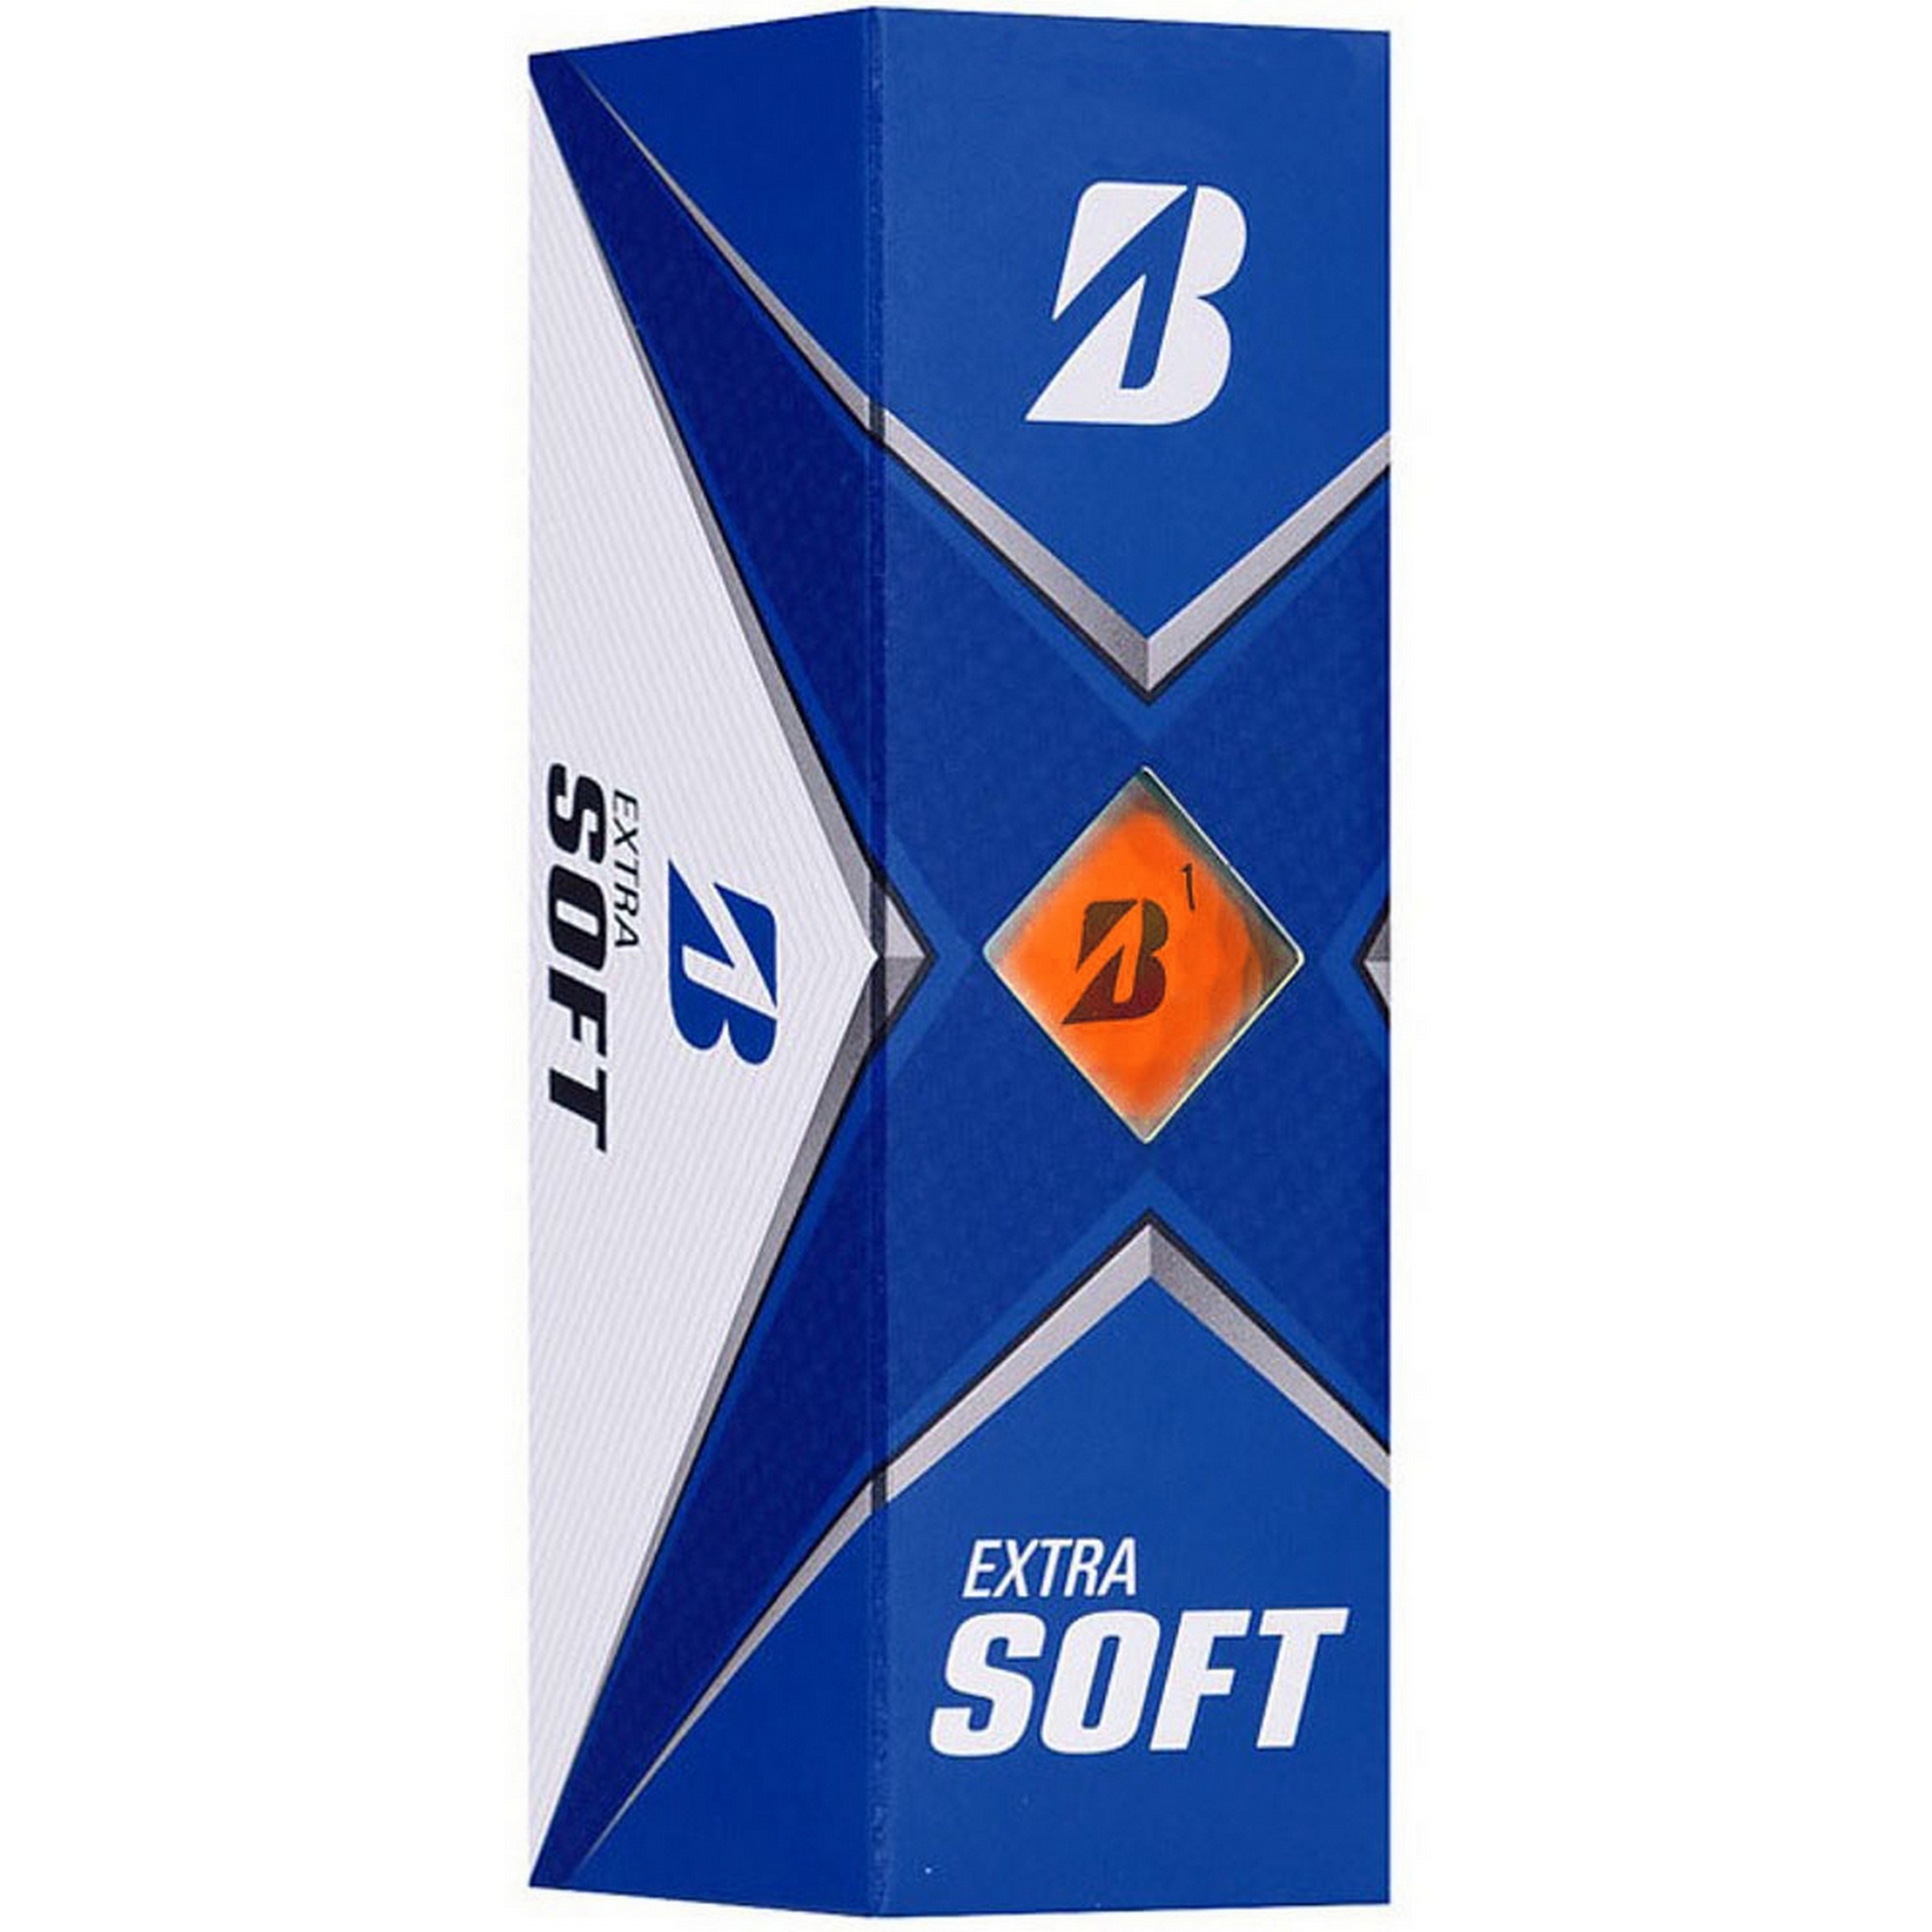    Bridgestone Extra Soft BGBX1OXJE  (3)